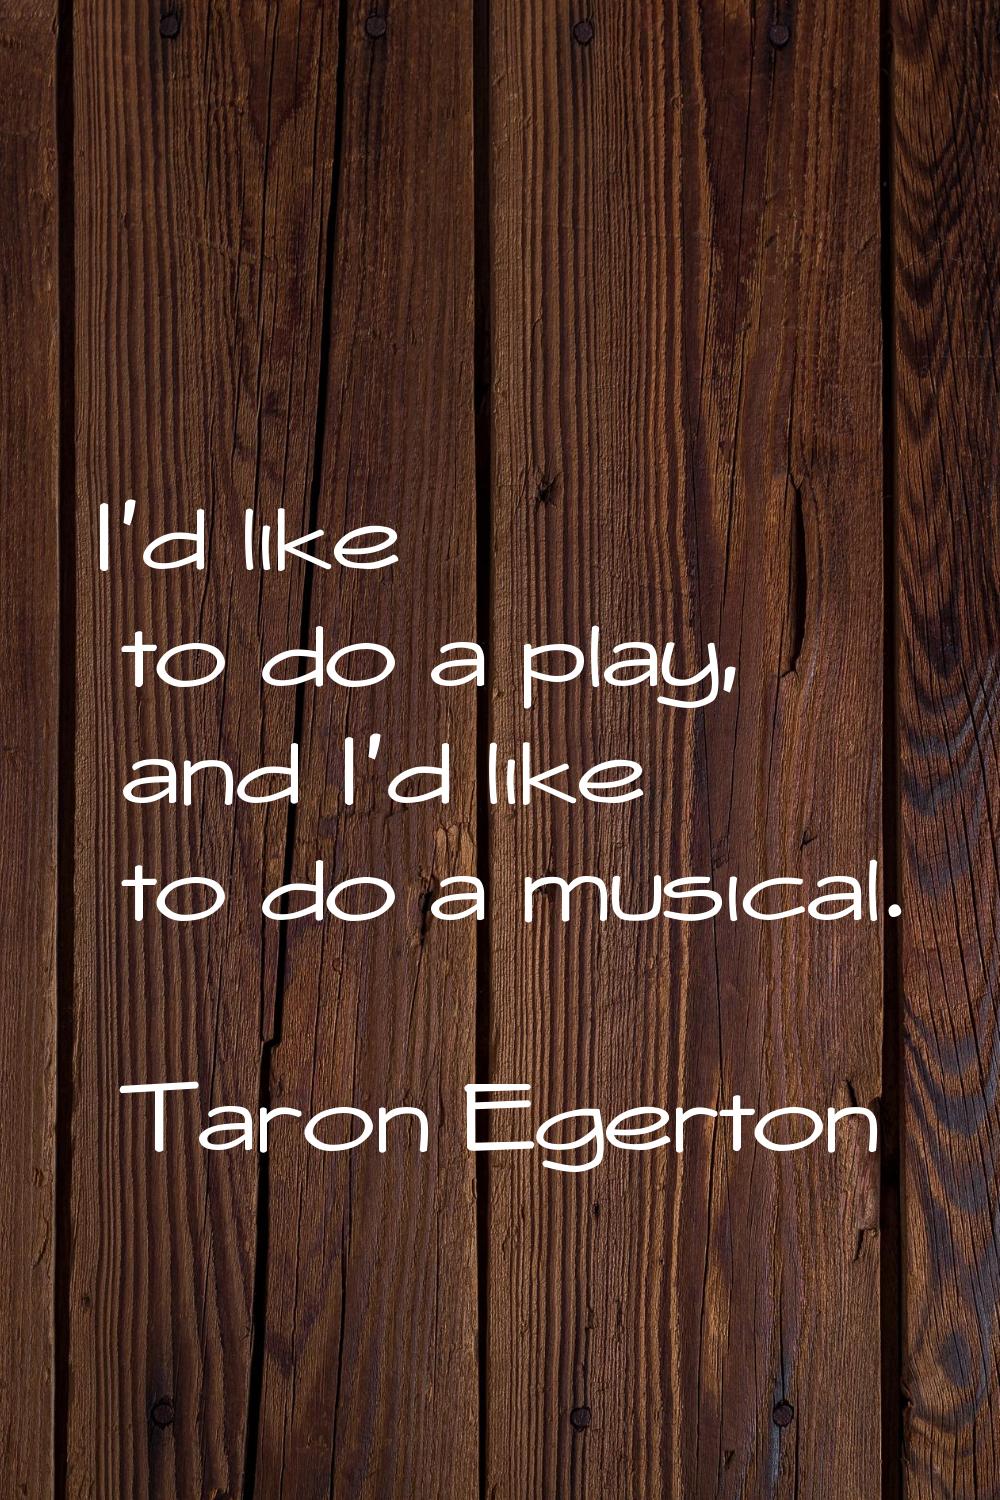 I'd like to do a play, and I'd like to do a musical.